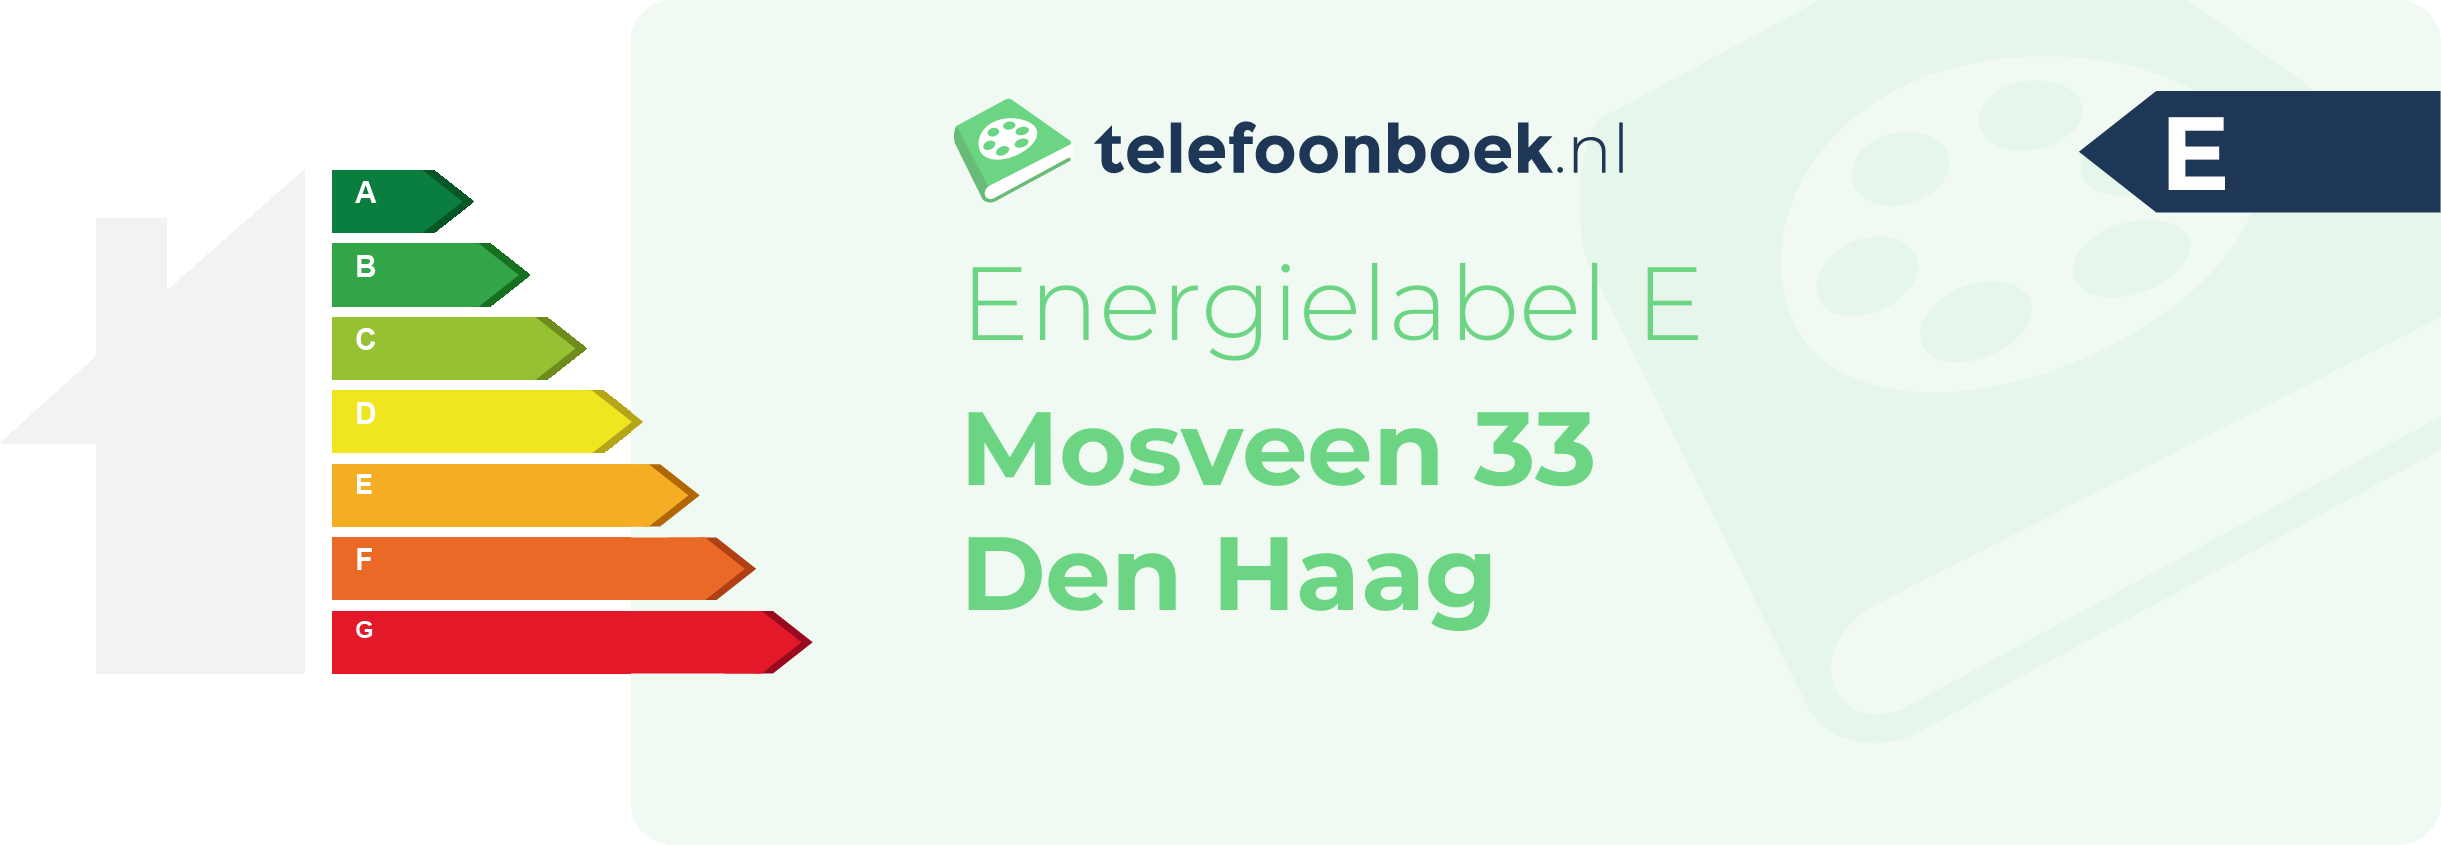 Energielabel Mosveen 33 Den Haag